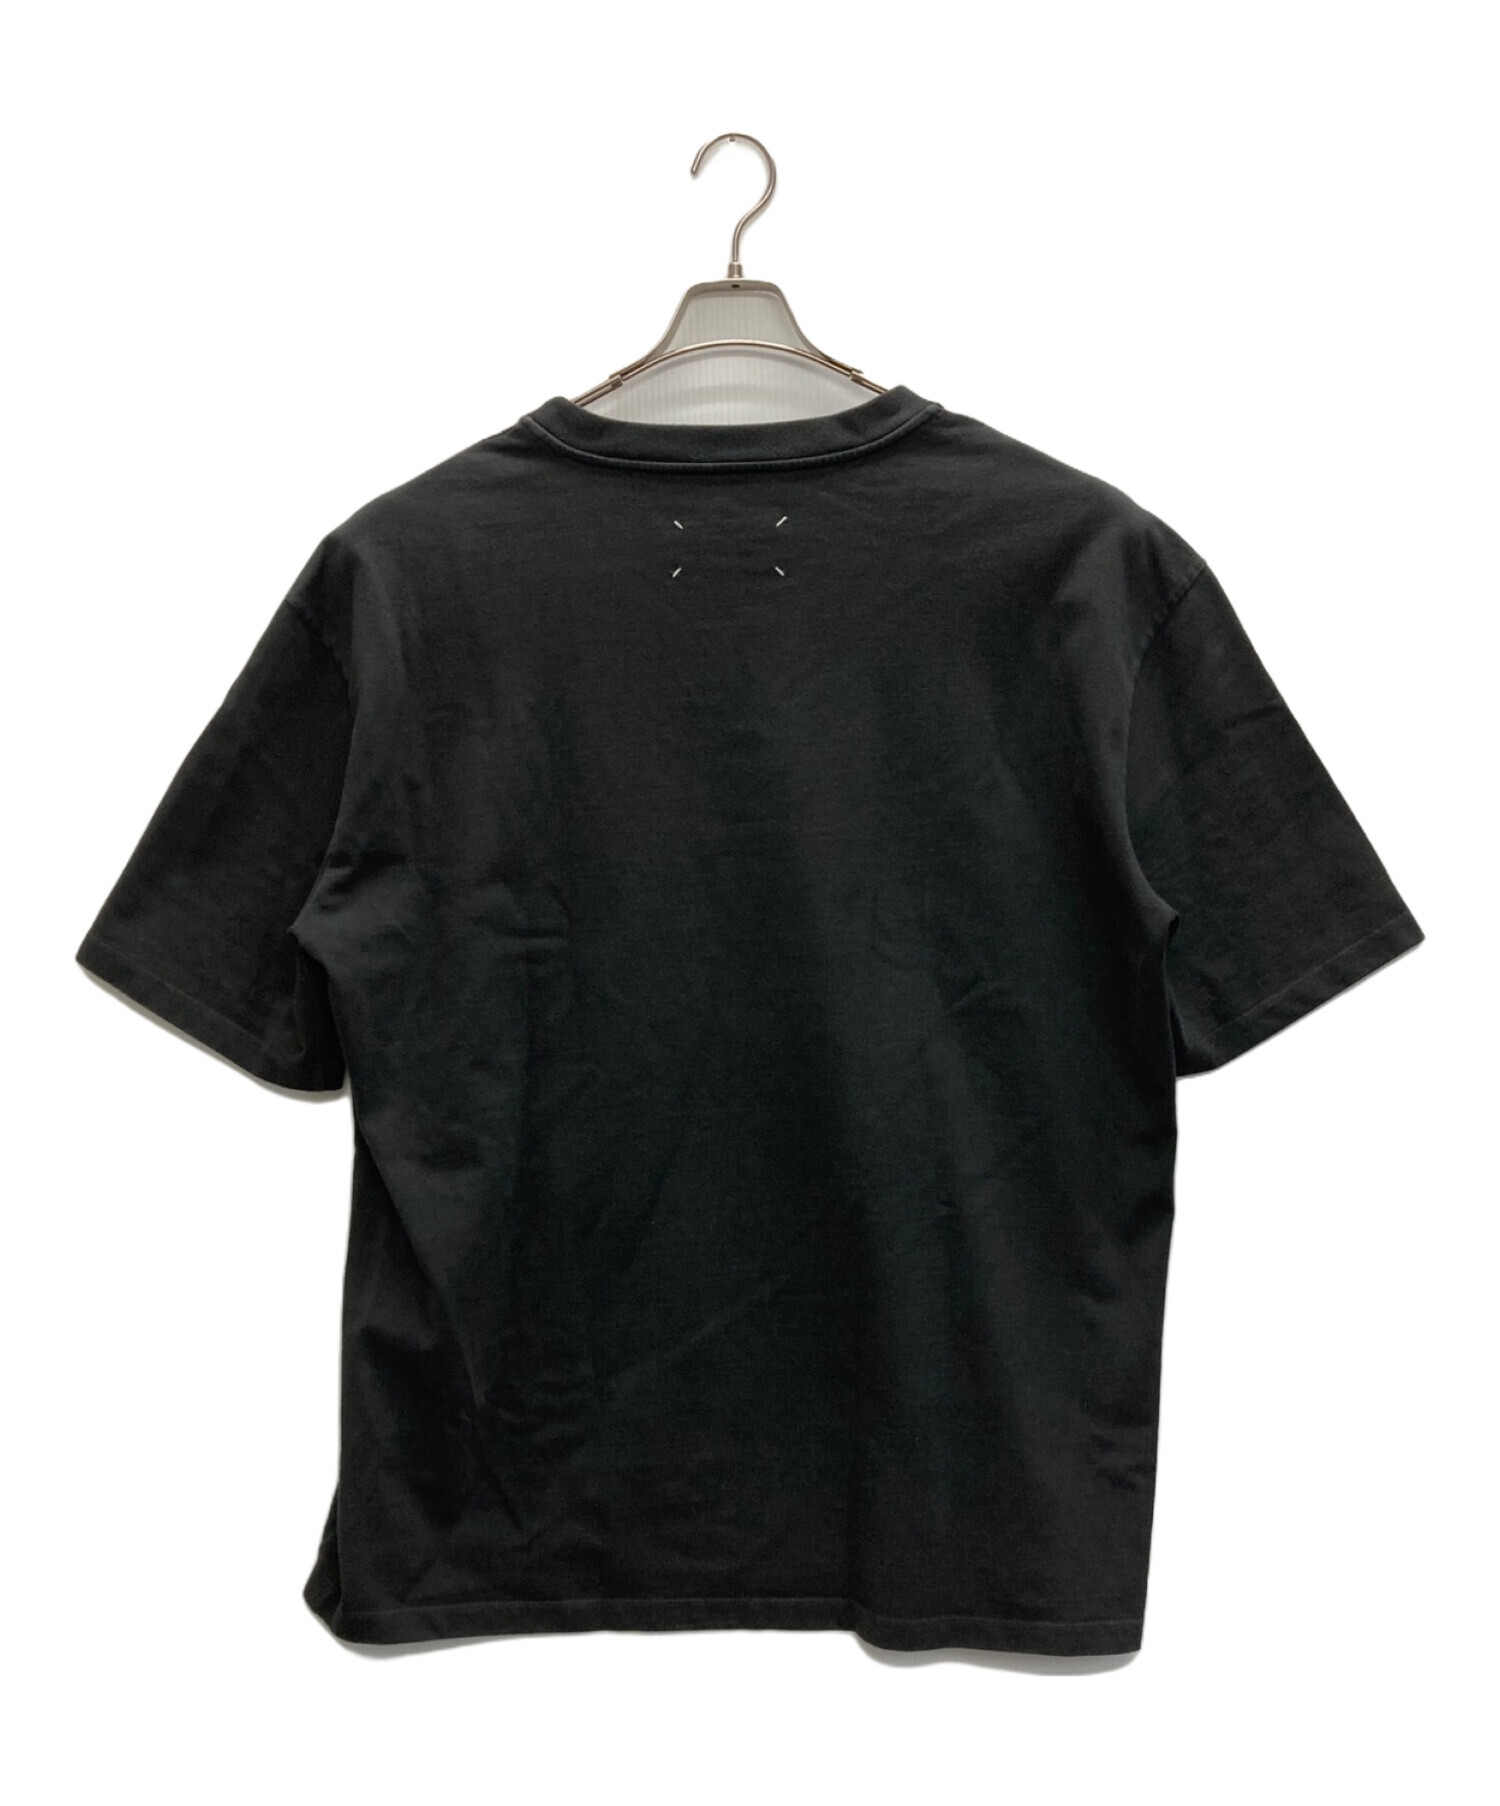 Maison Margiela (メゾンマルジェラ) オーバーサイズテーピングプリントTシャツ ブラック サイズ:SIZE 48